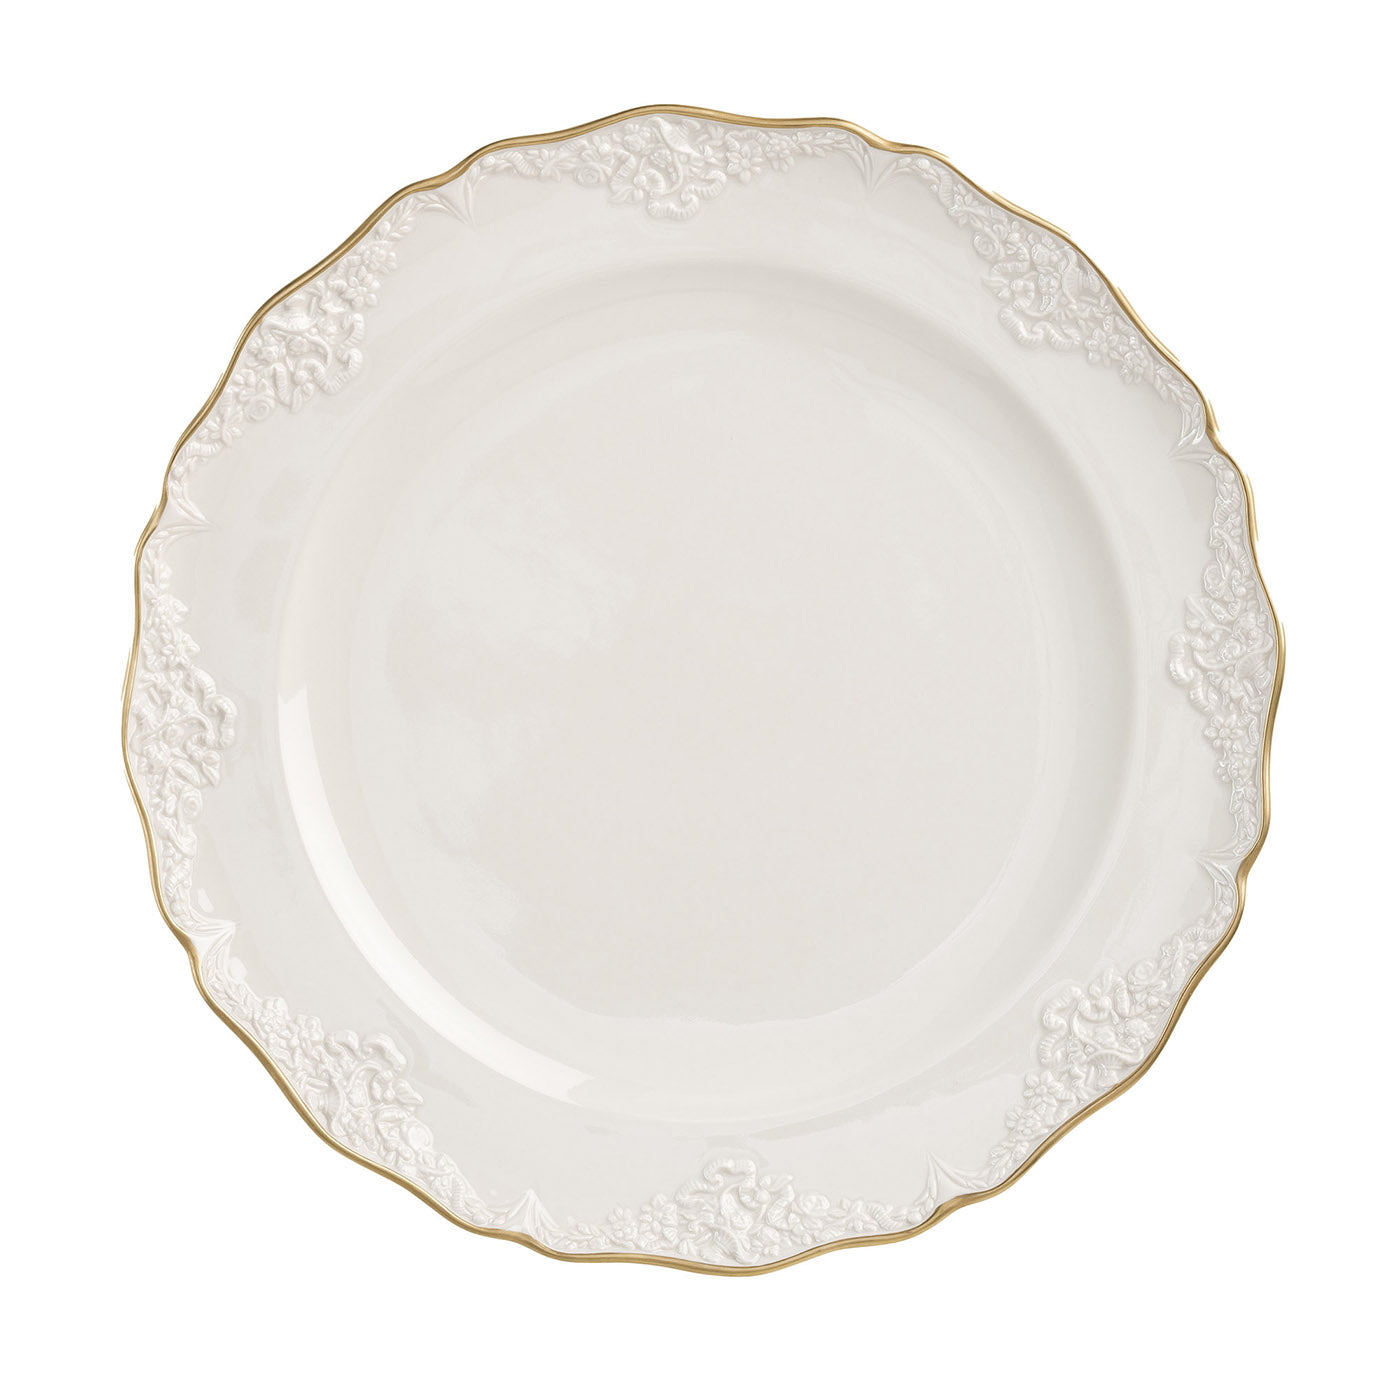 Irene - Lot de 2 grandes assiettes plates blanches et dorées - Vue principale